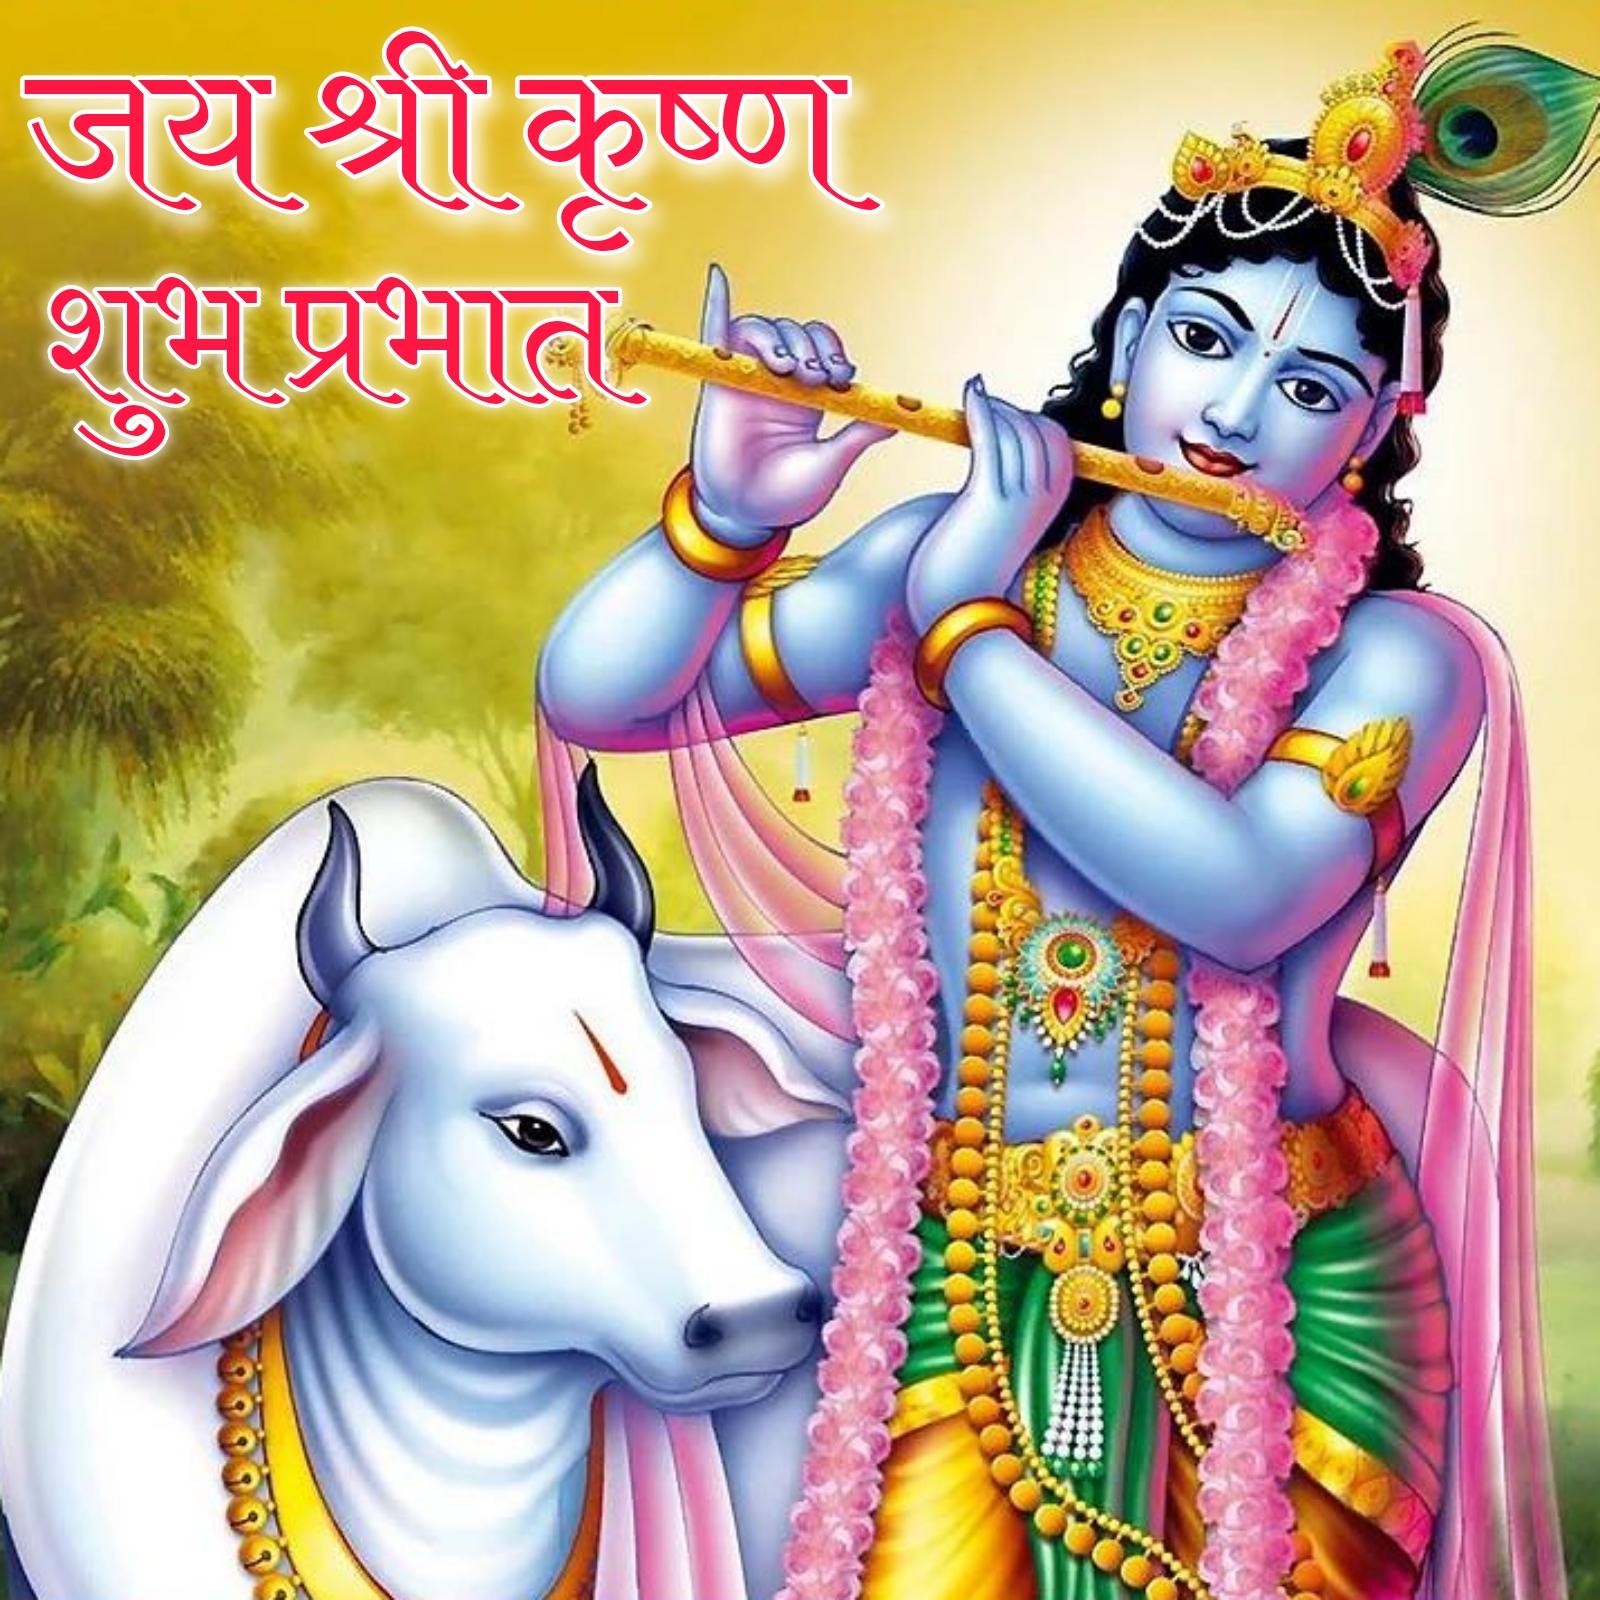 Jai Shri Krishna Good Morning Images in Hindi